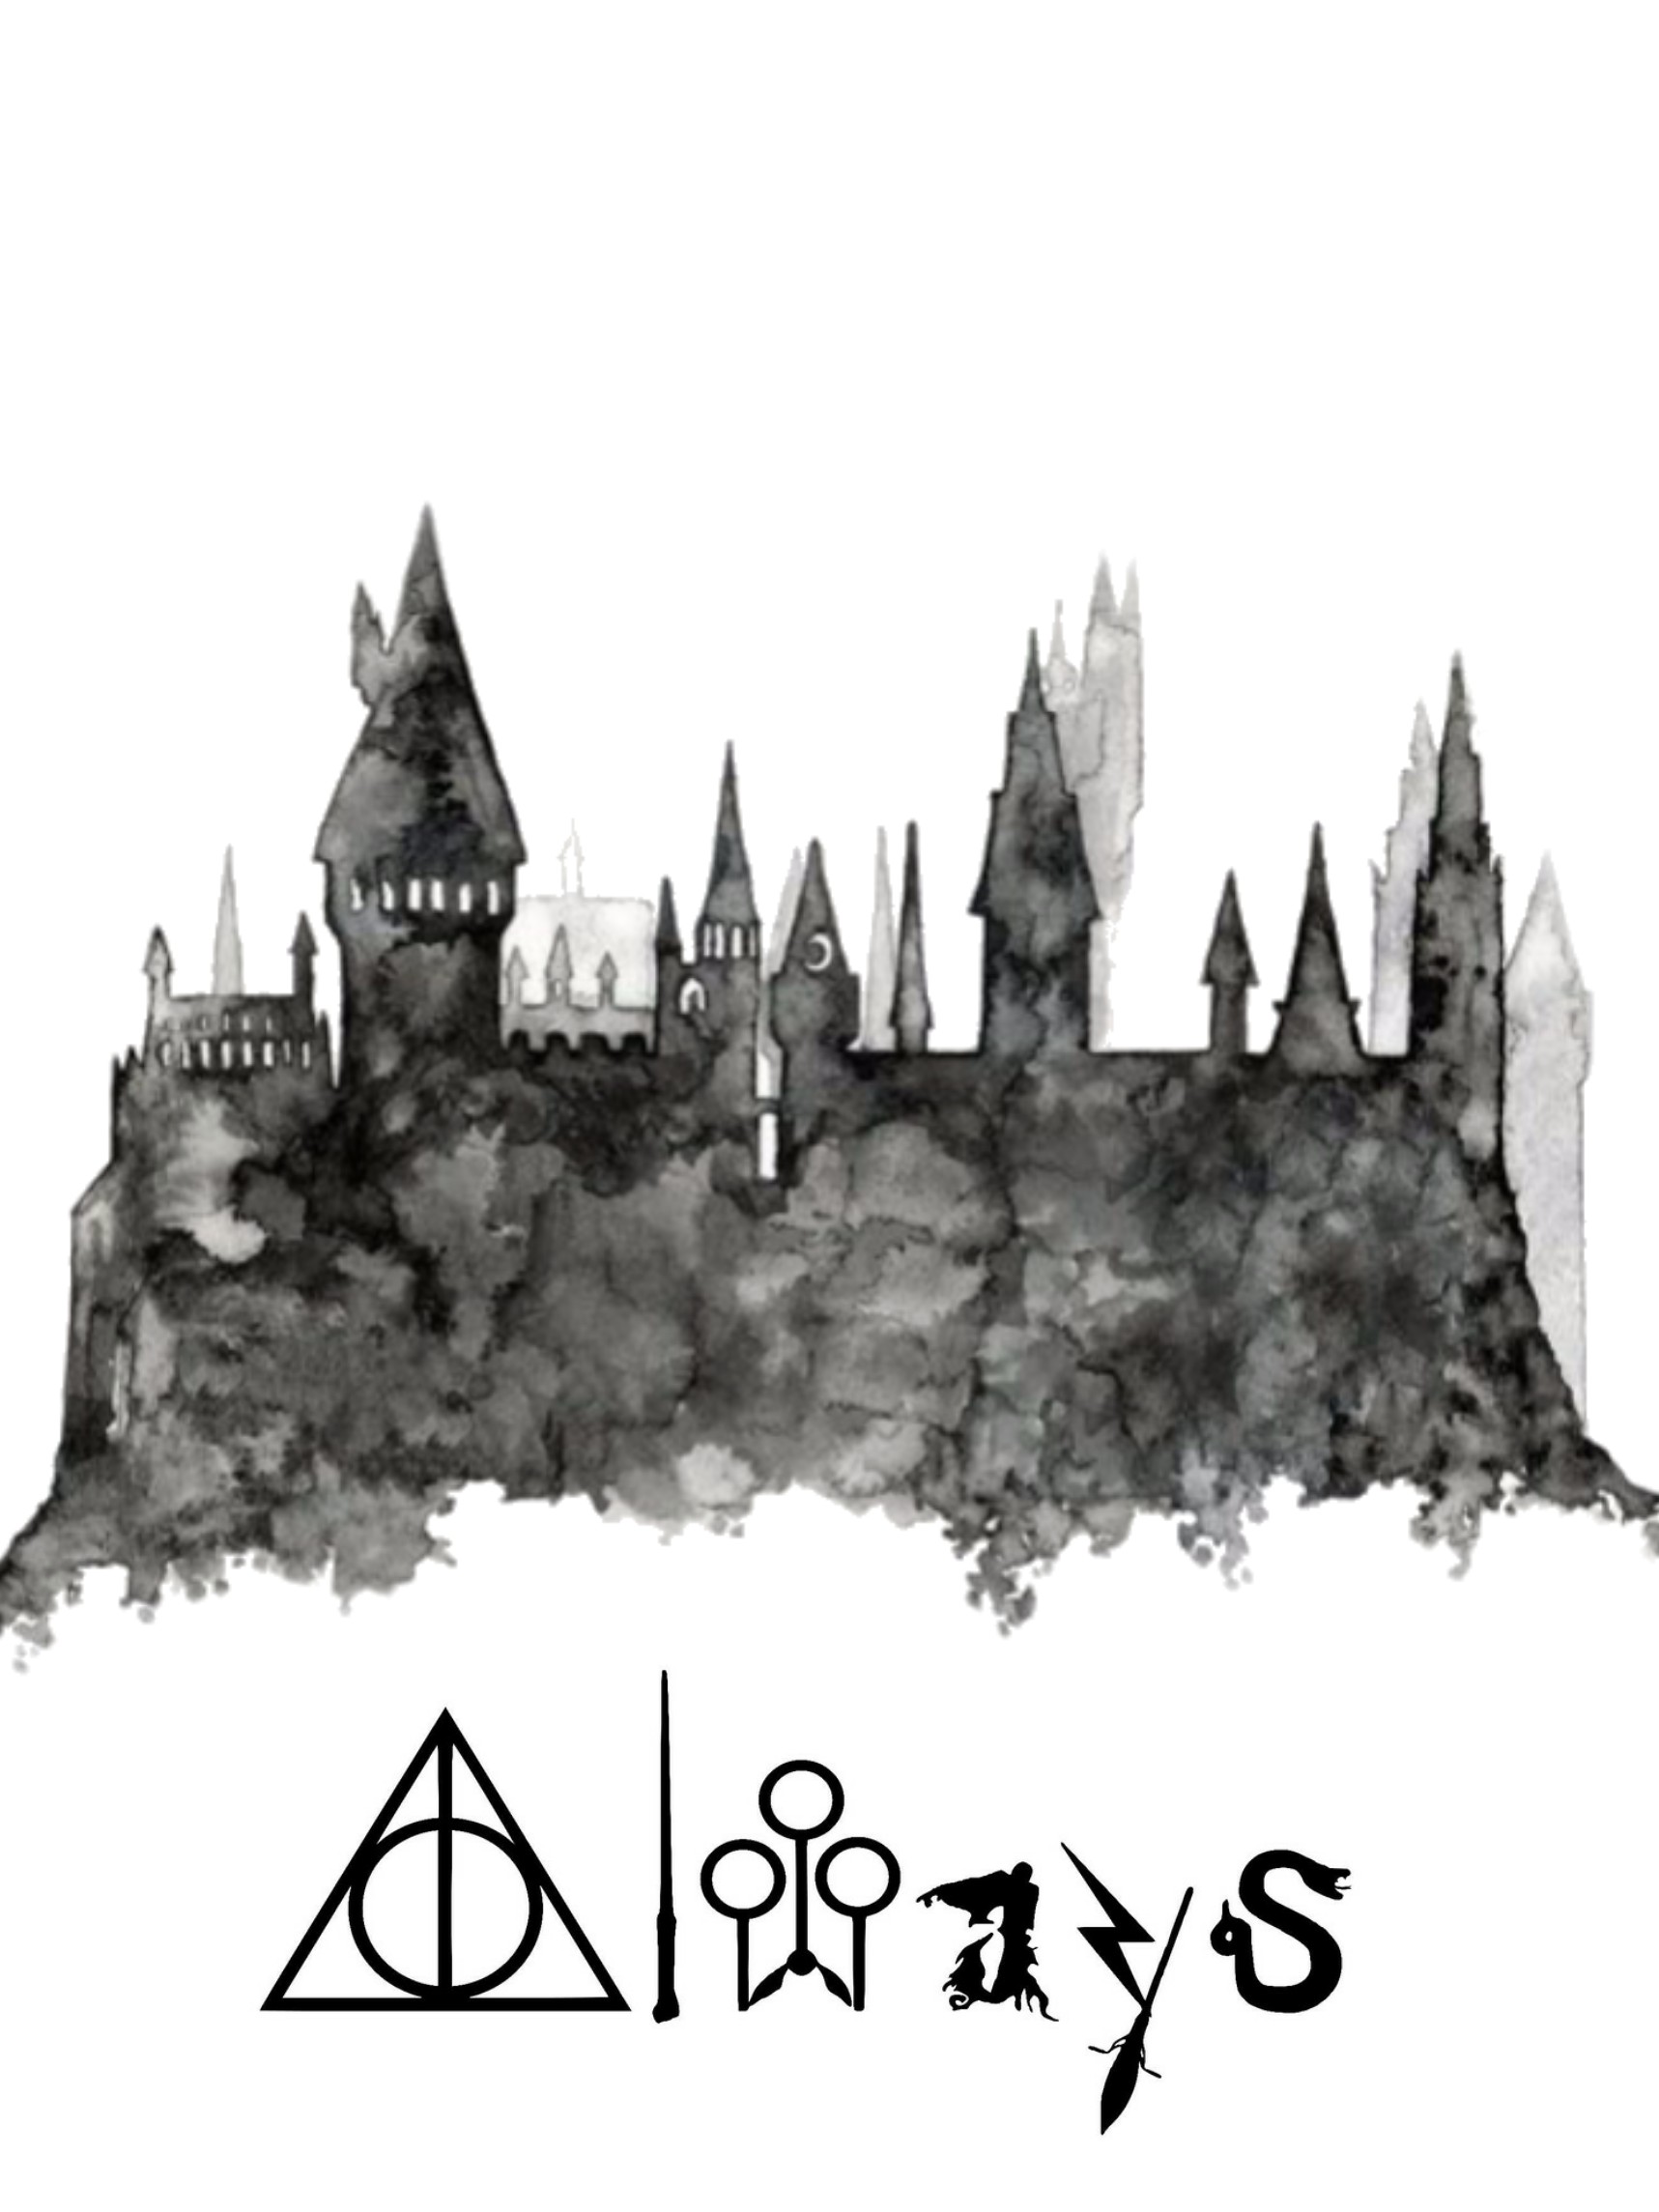 harrypotter #harry #potter #wallpaper #hogwarts Hogwarts Castle